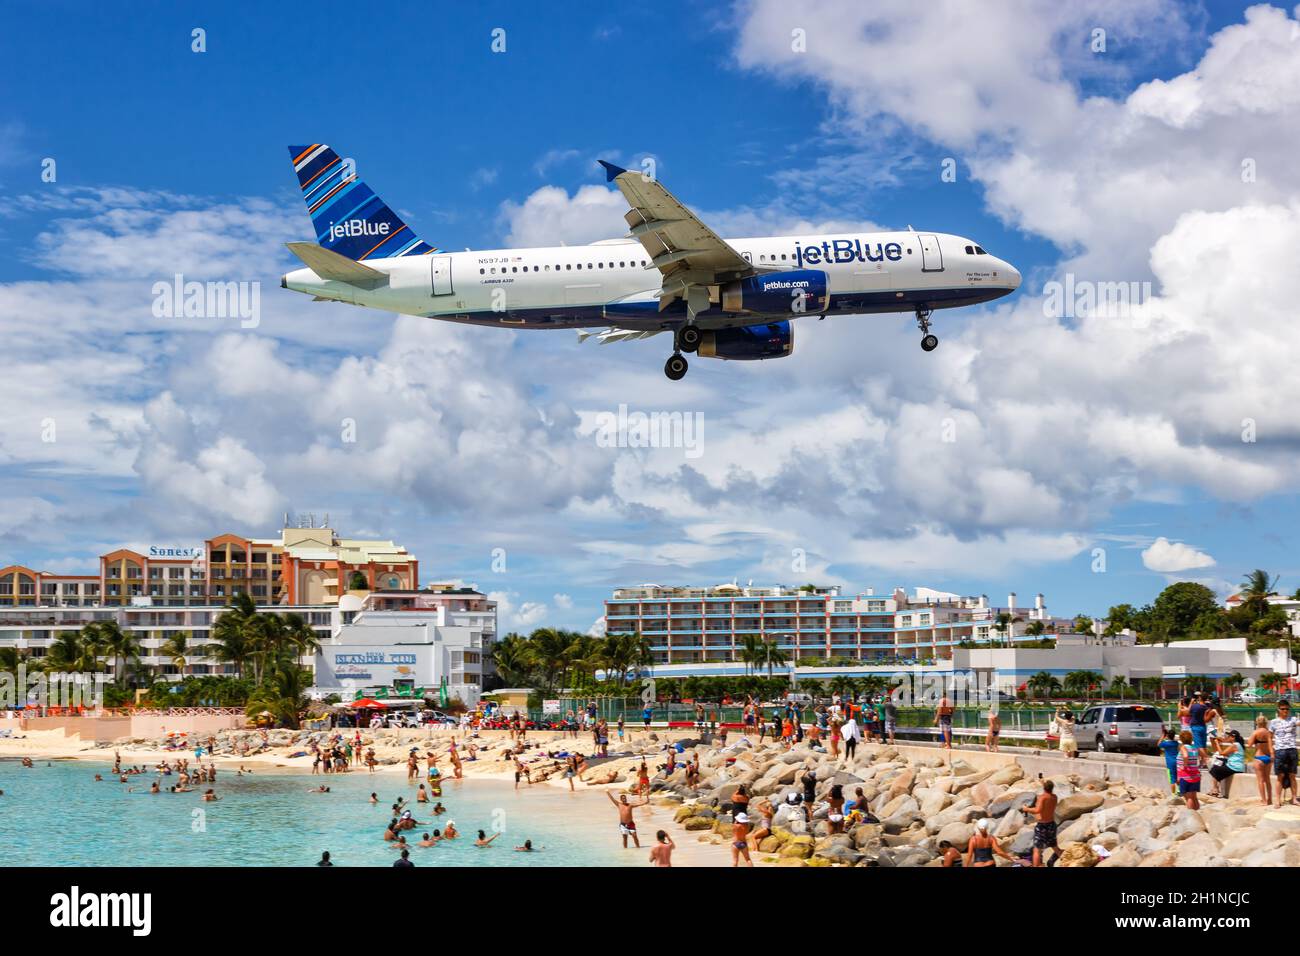 Sint Maarten, Netherlands Antilles - September 17, 2016: JetBlue Airbus A320 airplane at Sint Maarten Airport (SXM) in the Caribbean. Stock Photo